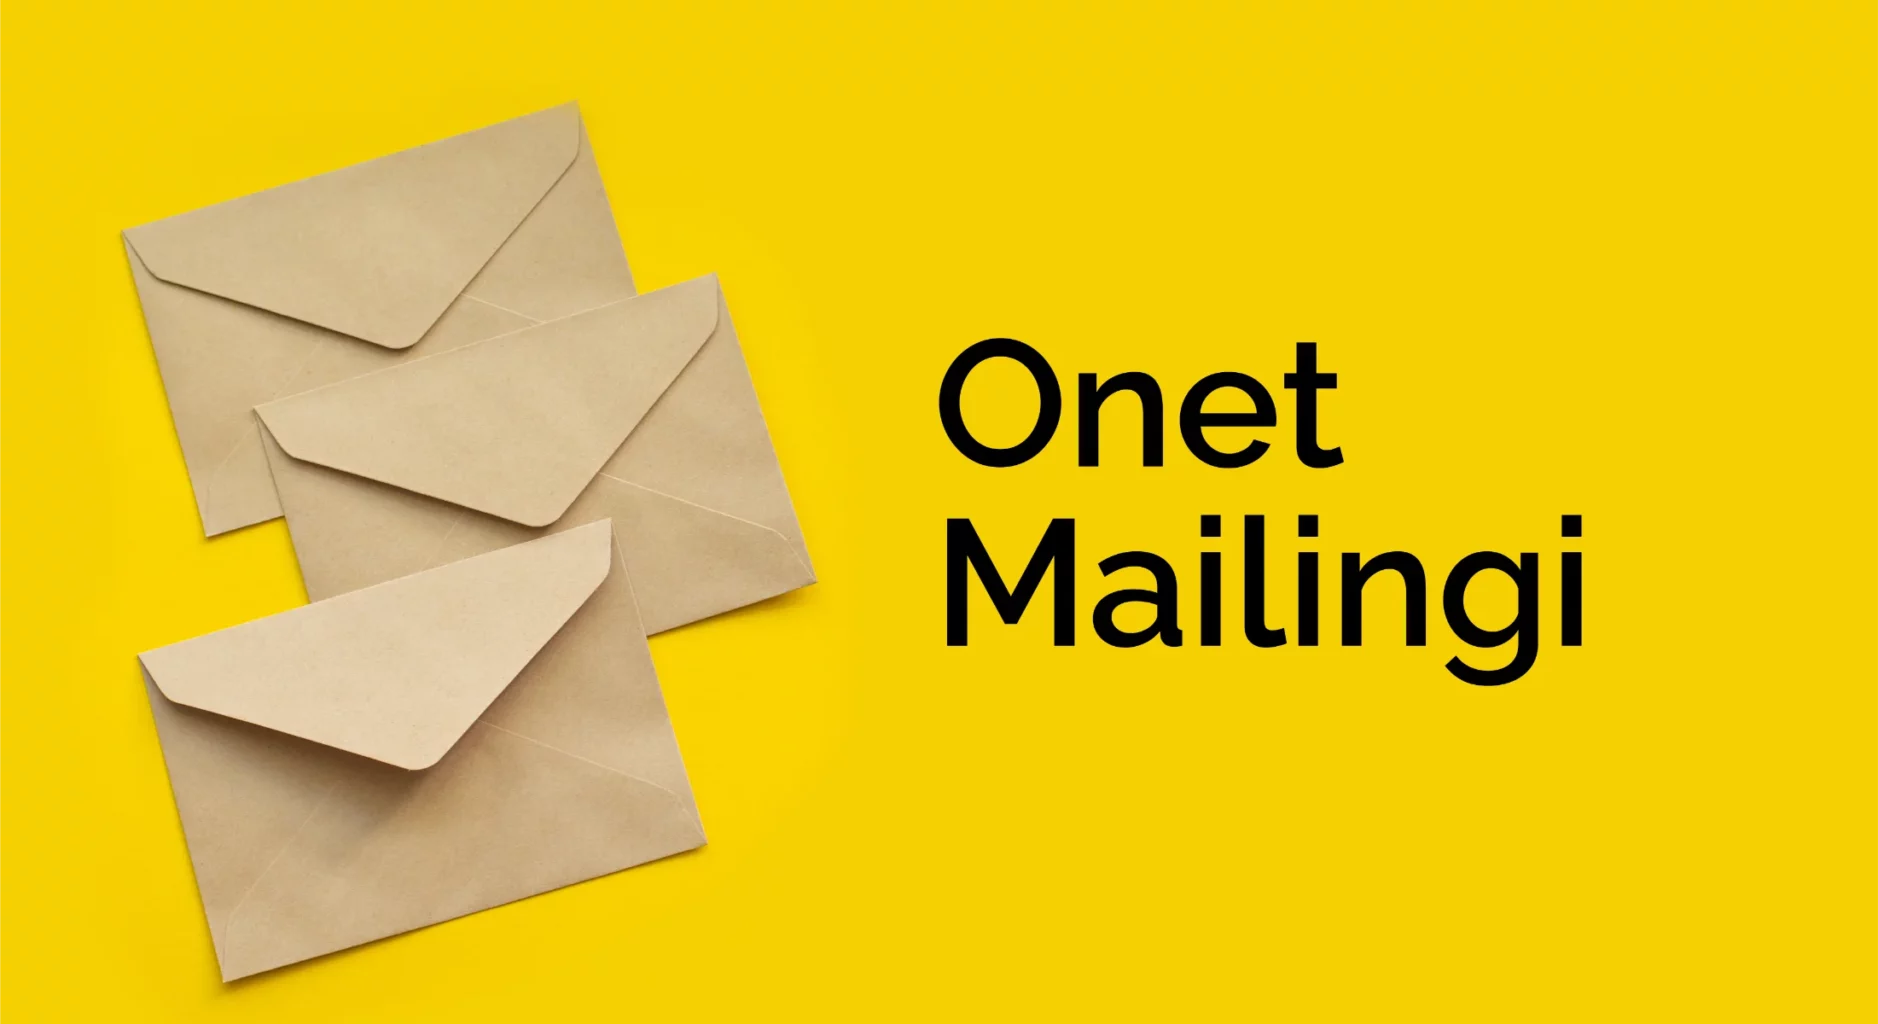 3 szare koperty z lewej strony na zółtym tle, a z prawej stron napis onet mailingi